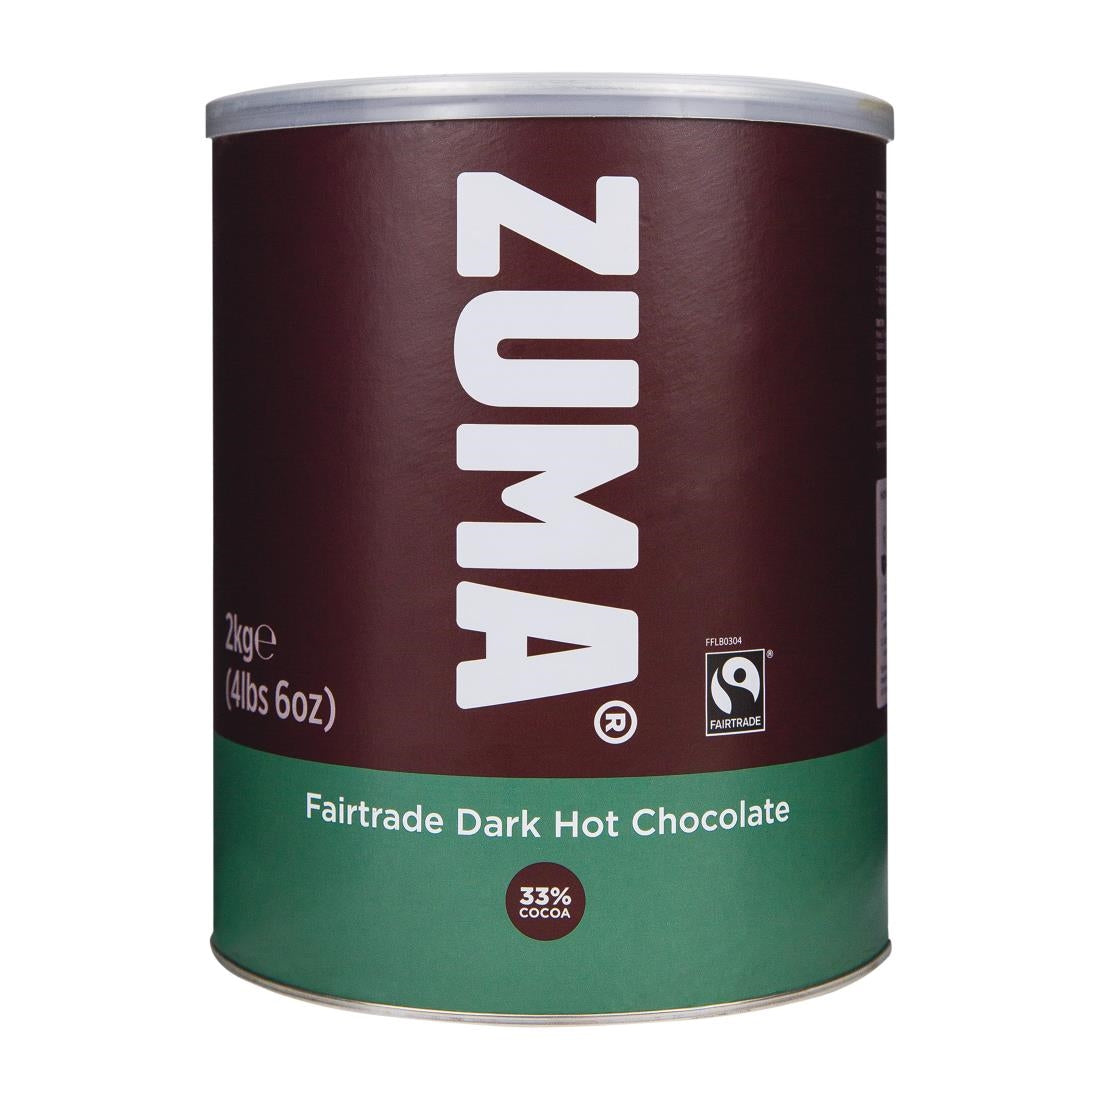 DX613 Zuma Fairtrade Dark Hot Chocolate (33% Cocoa) 2kg Tin